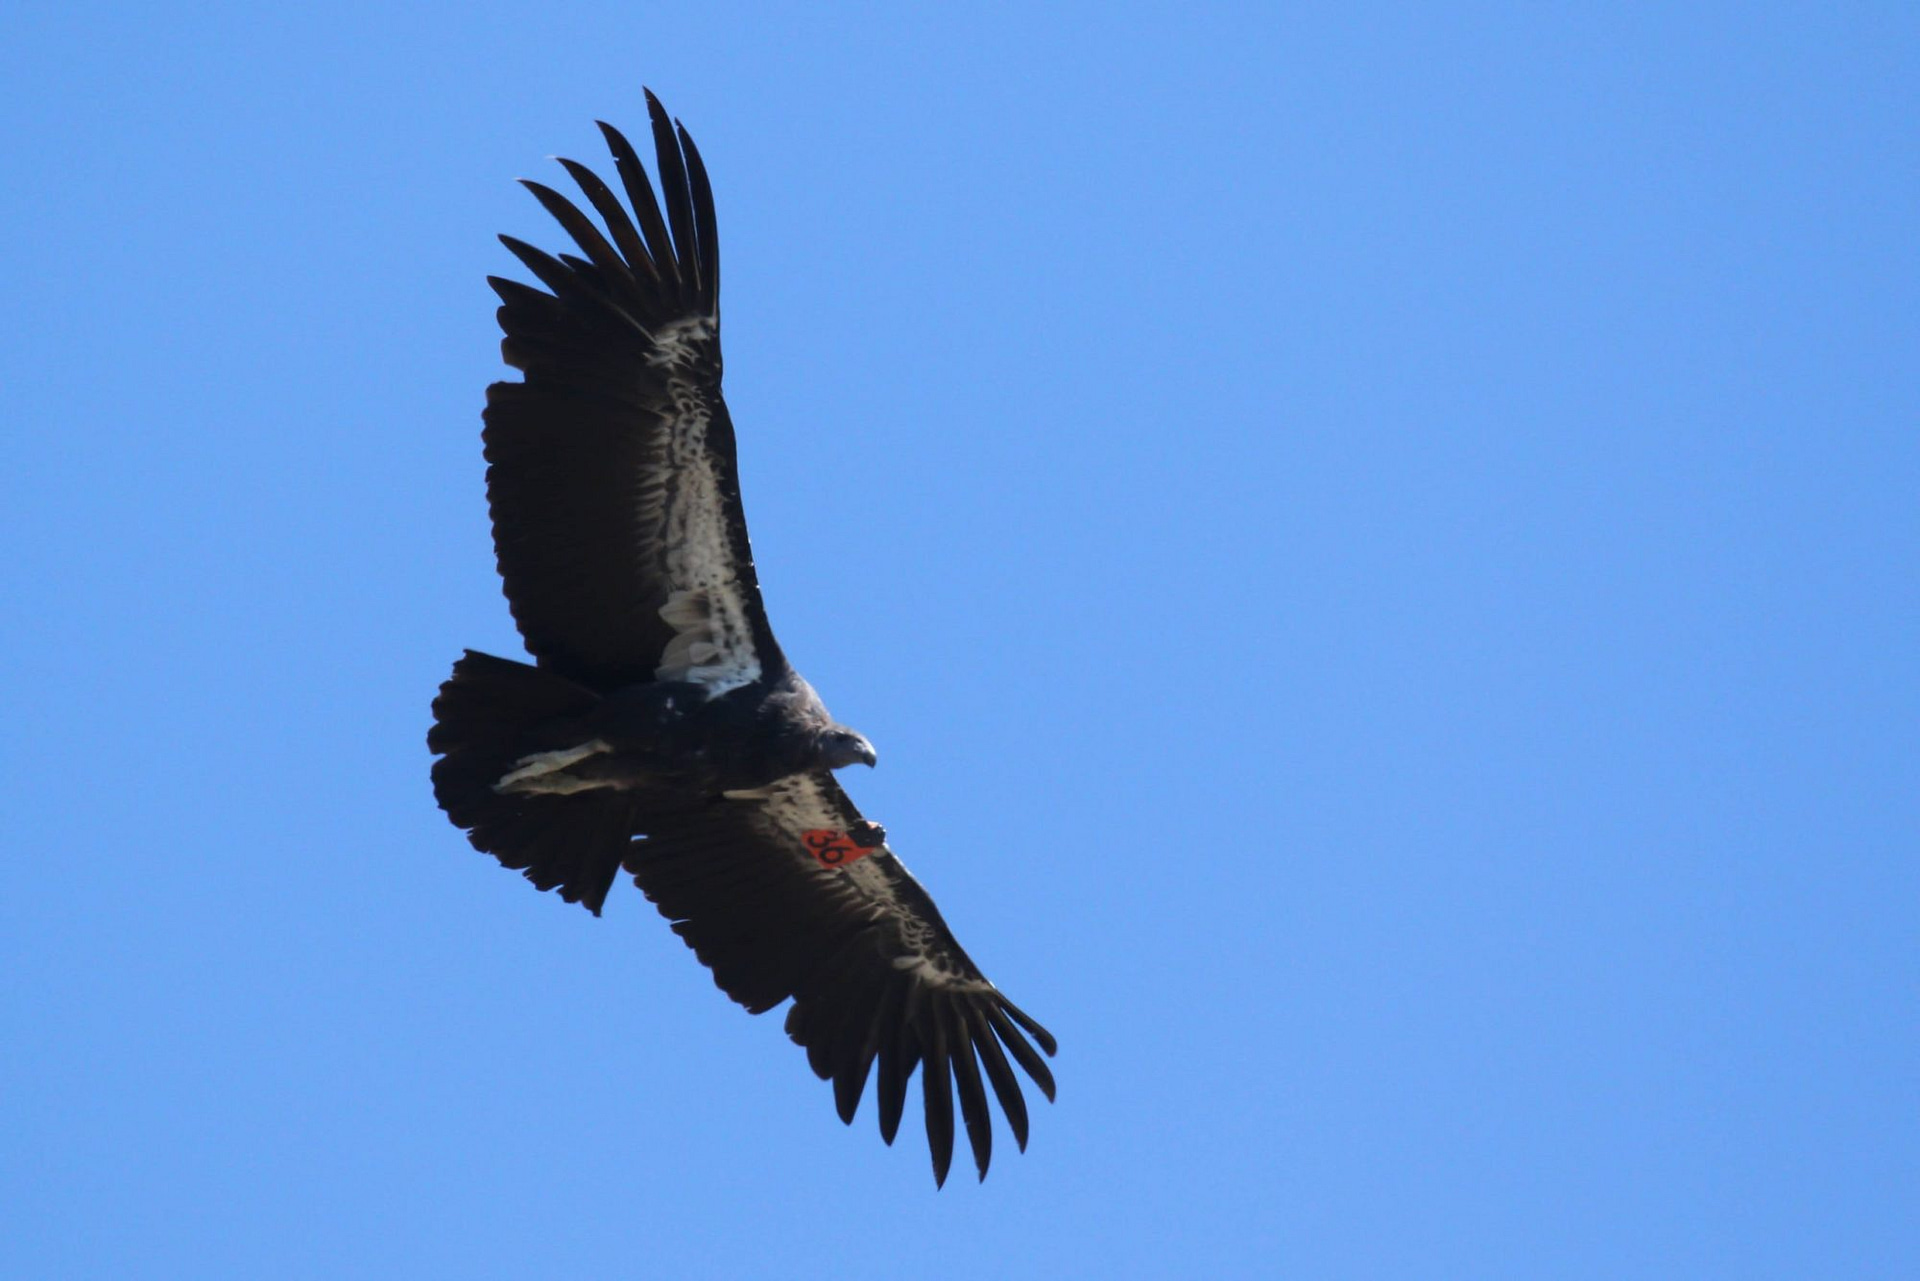 California Condor, photo by Alex Lamoreaux